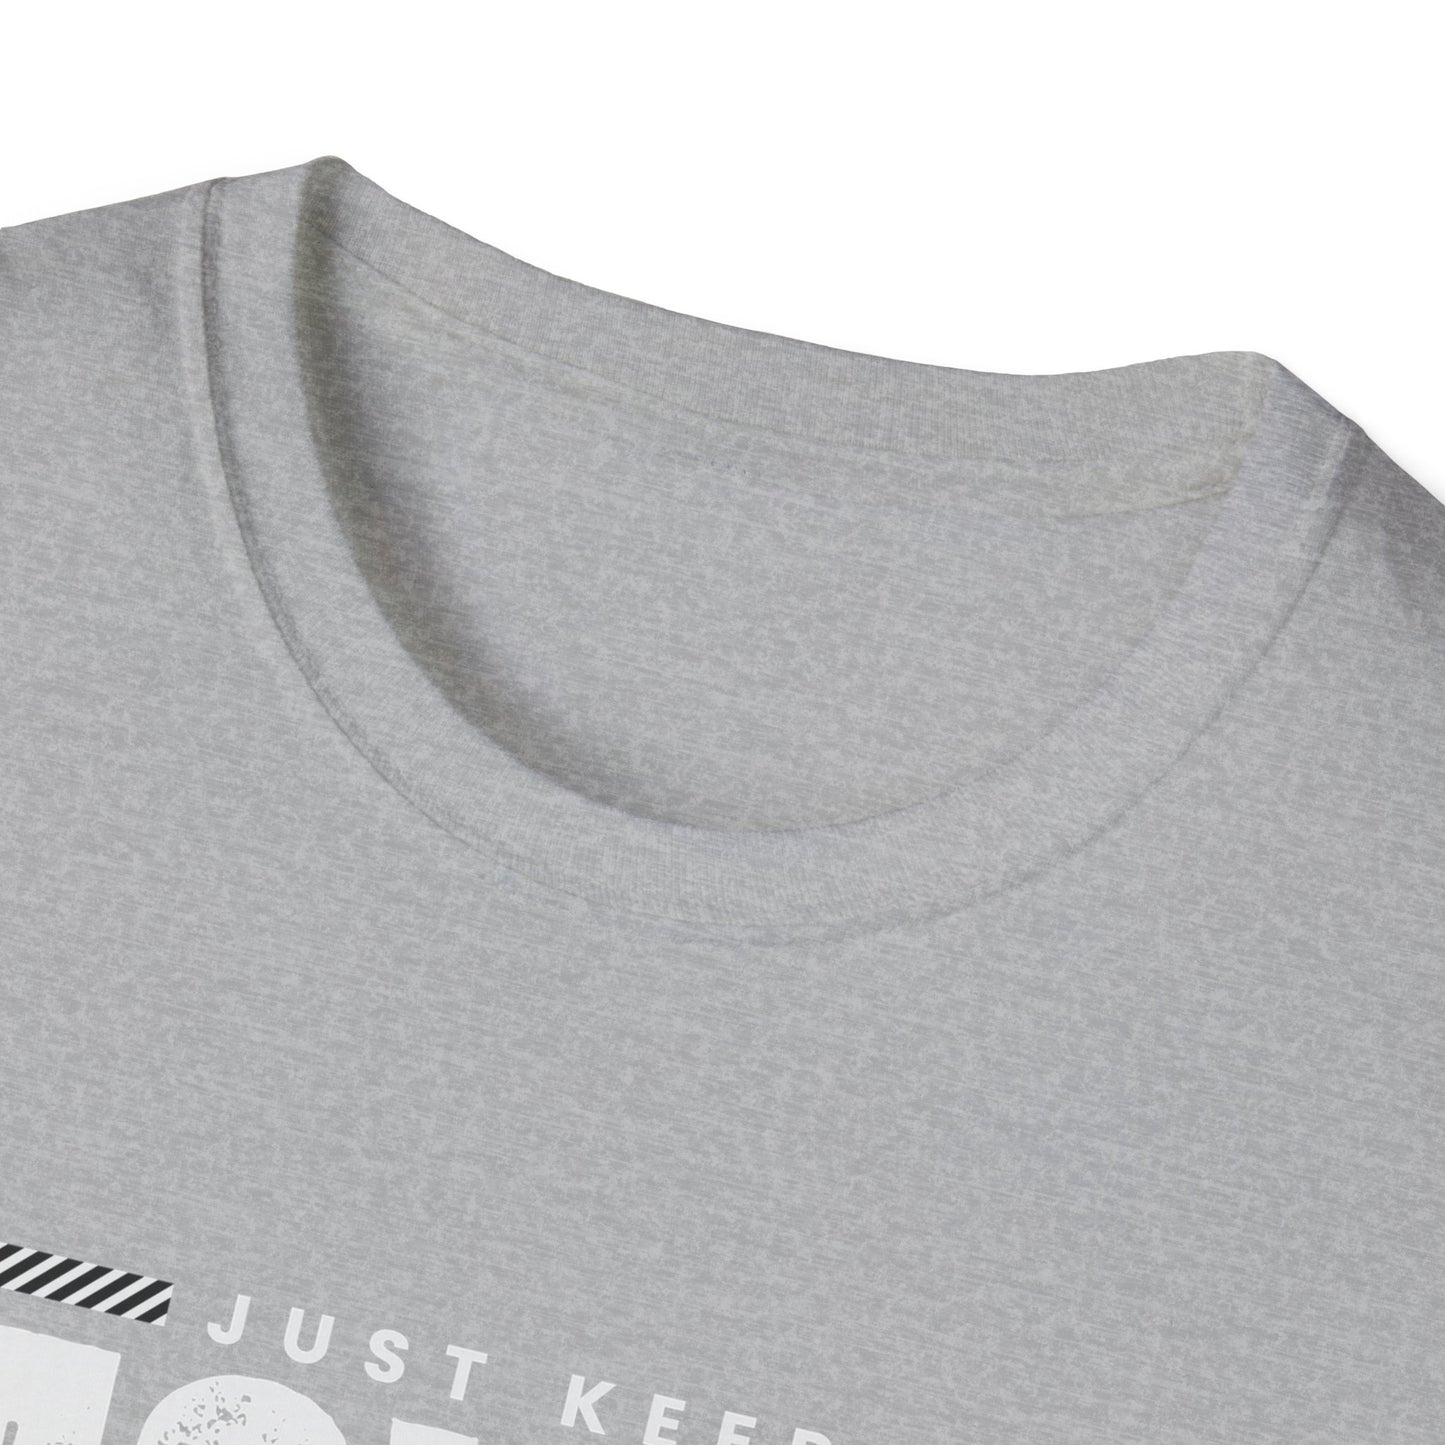 Unisex Softstyle design (Keep Moving) T-Shirt